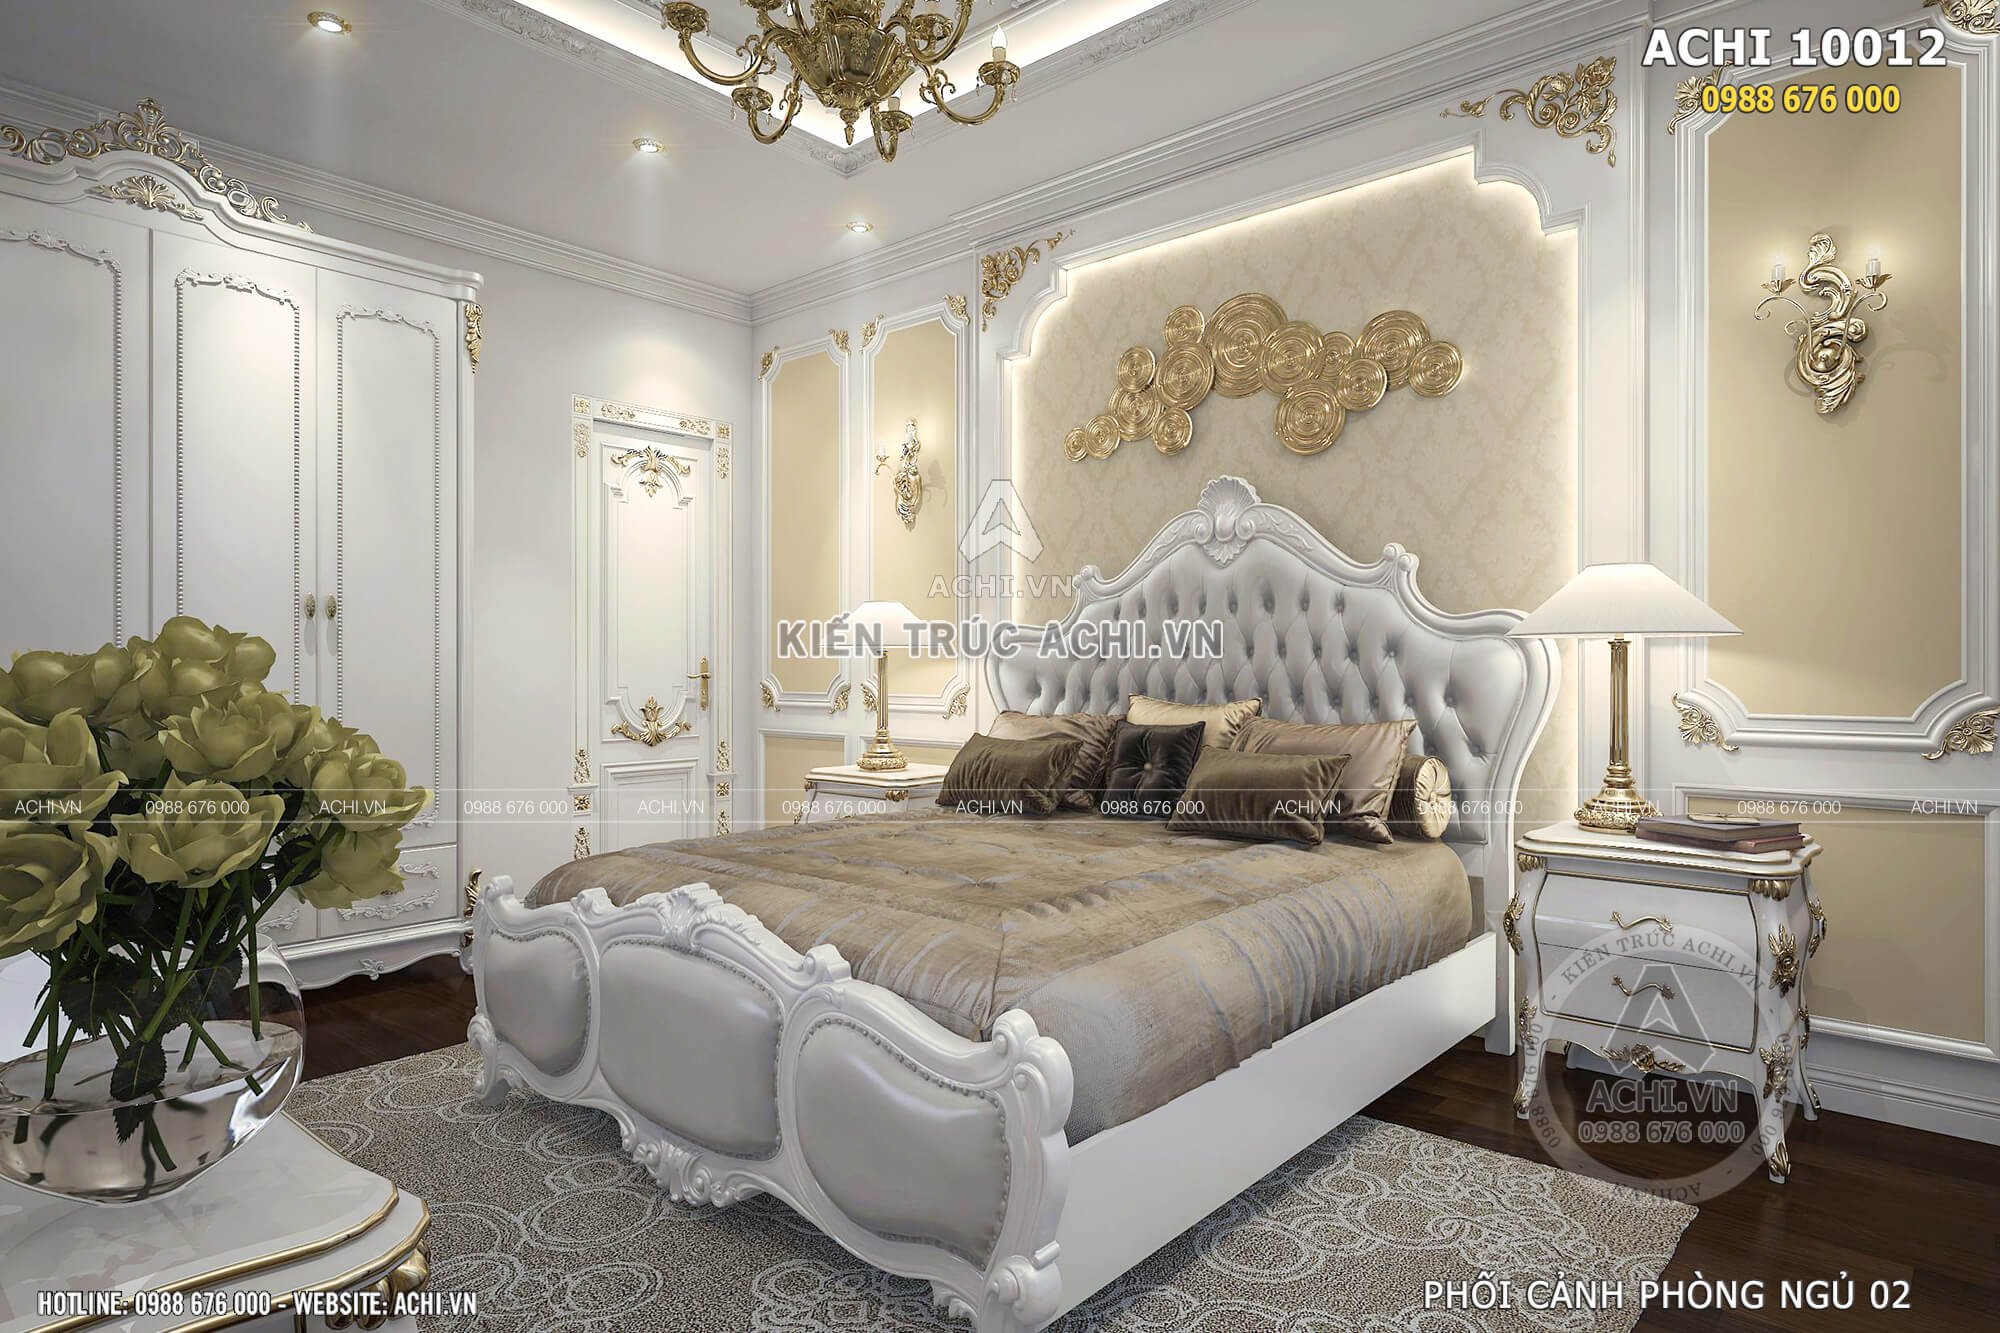 Thiết kế nội thất phòng ngủ mang phong cách tân cổ điển đẹp nhất xu hướng